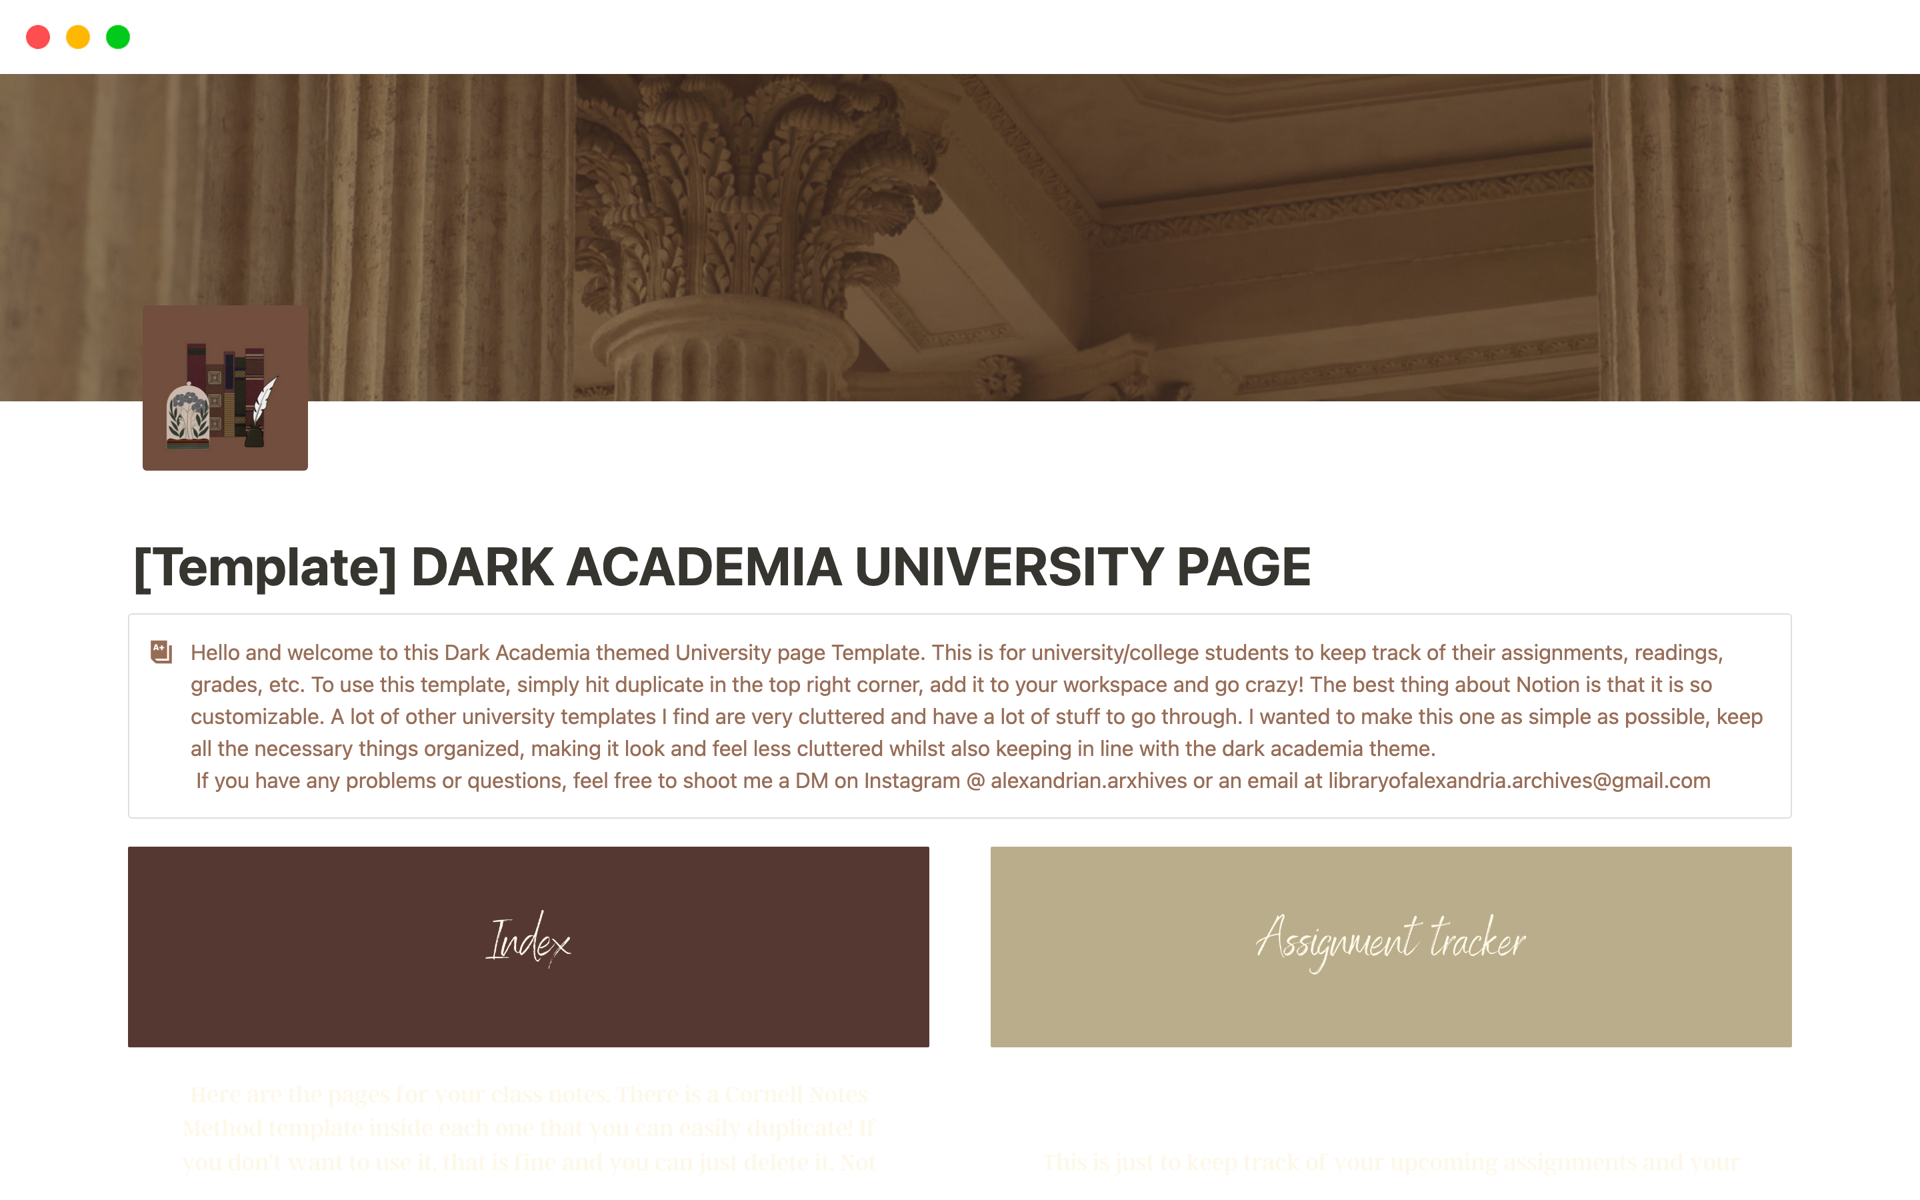 Vista previa de plantilla para DARK ACADEMIA UNIVERSITY PAGE